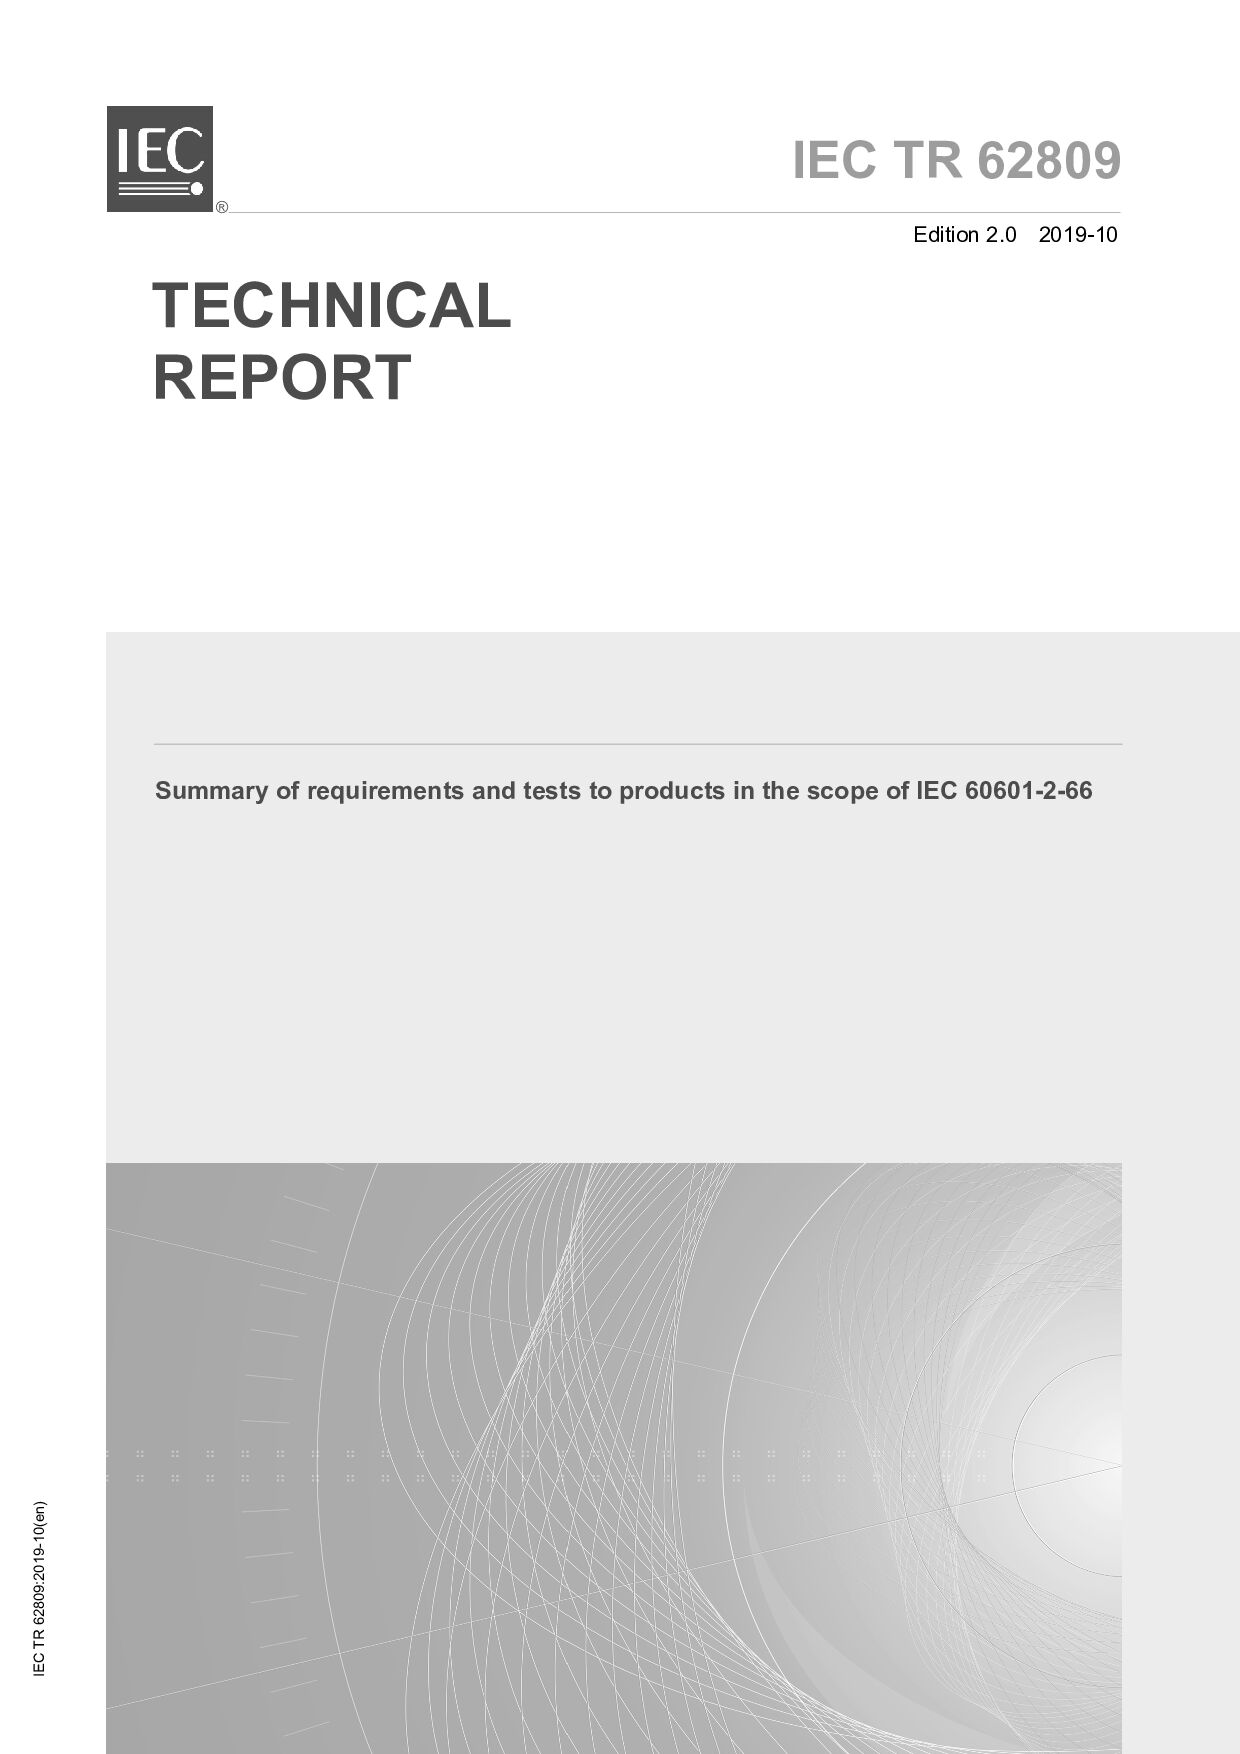 IEC TR 62809:2019